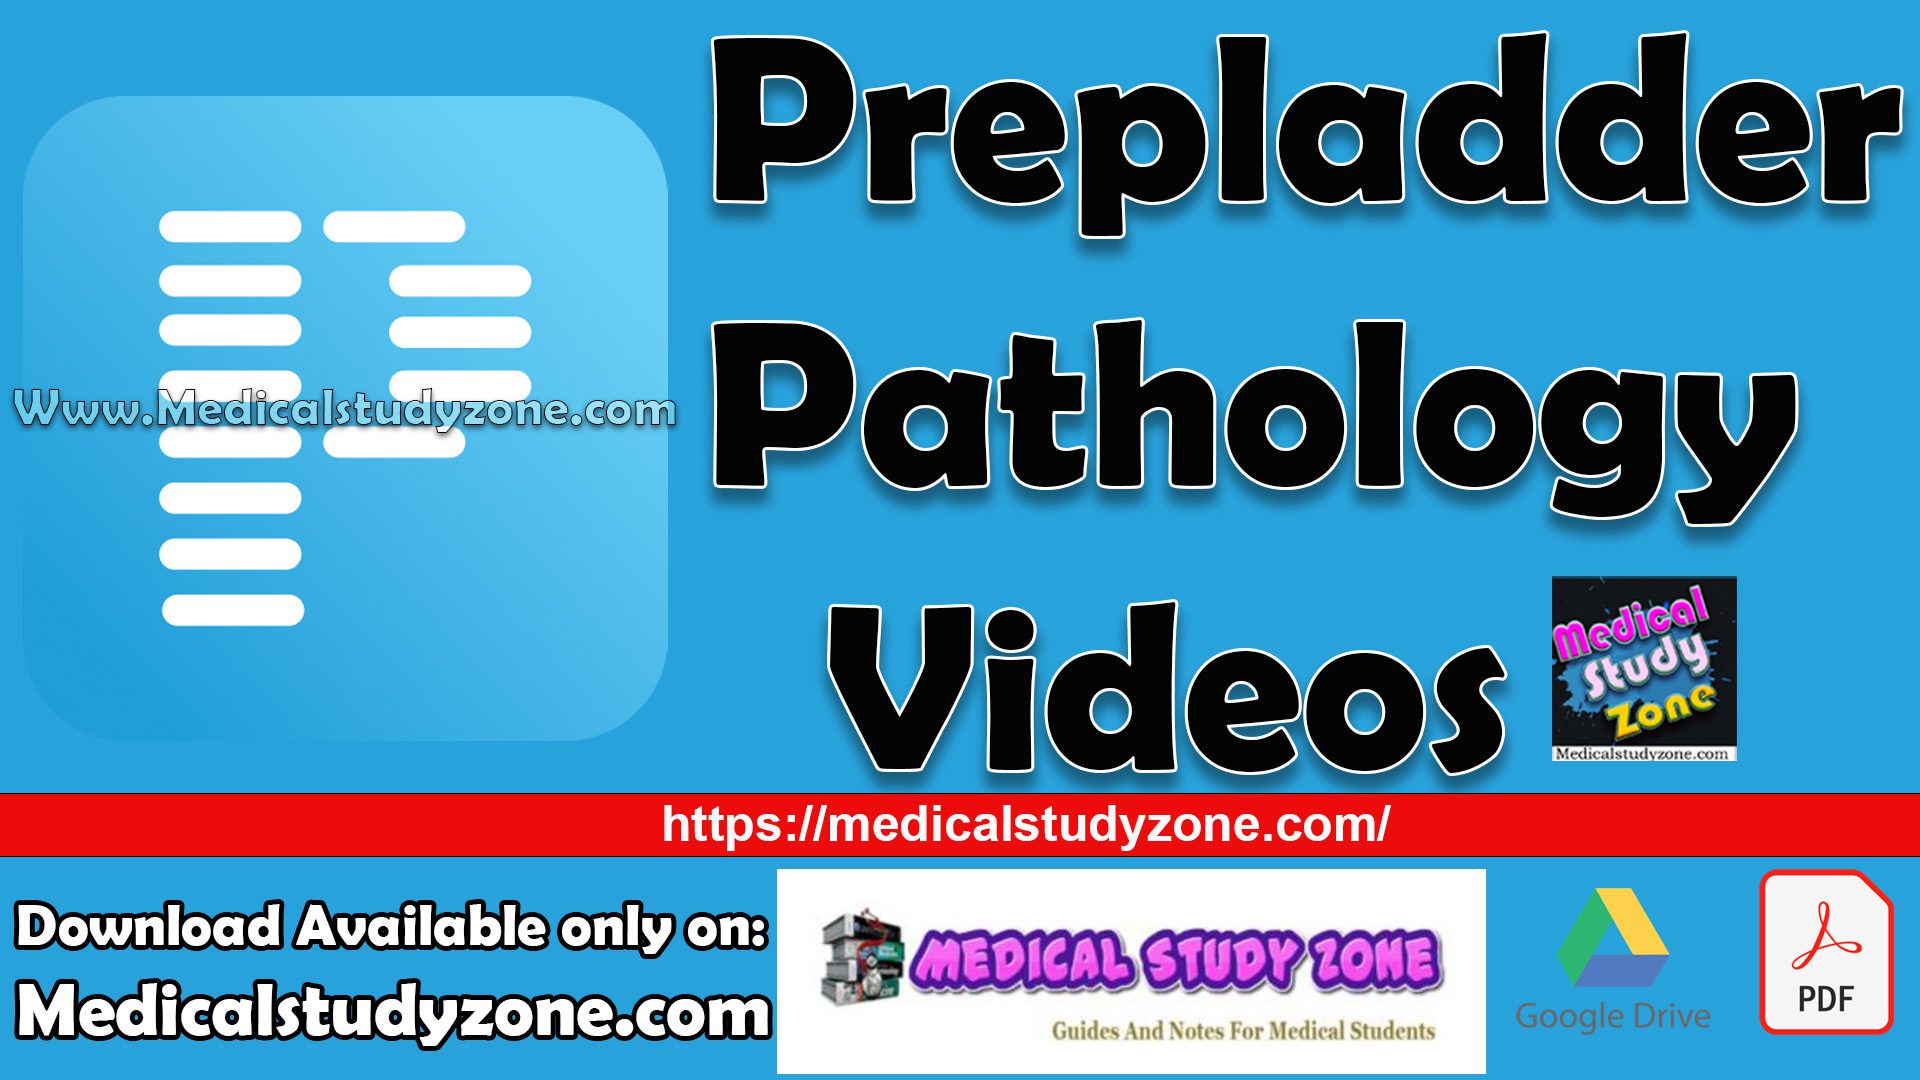 Prepladder Pathology Videos Free Download